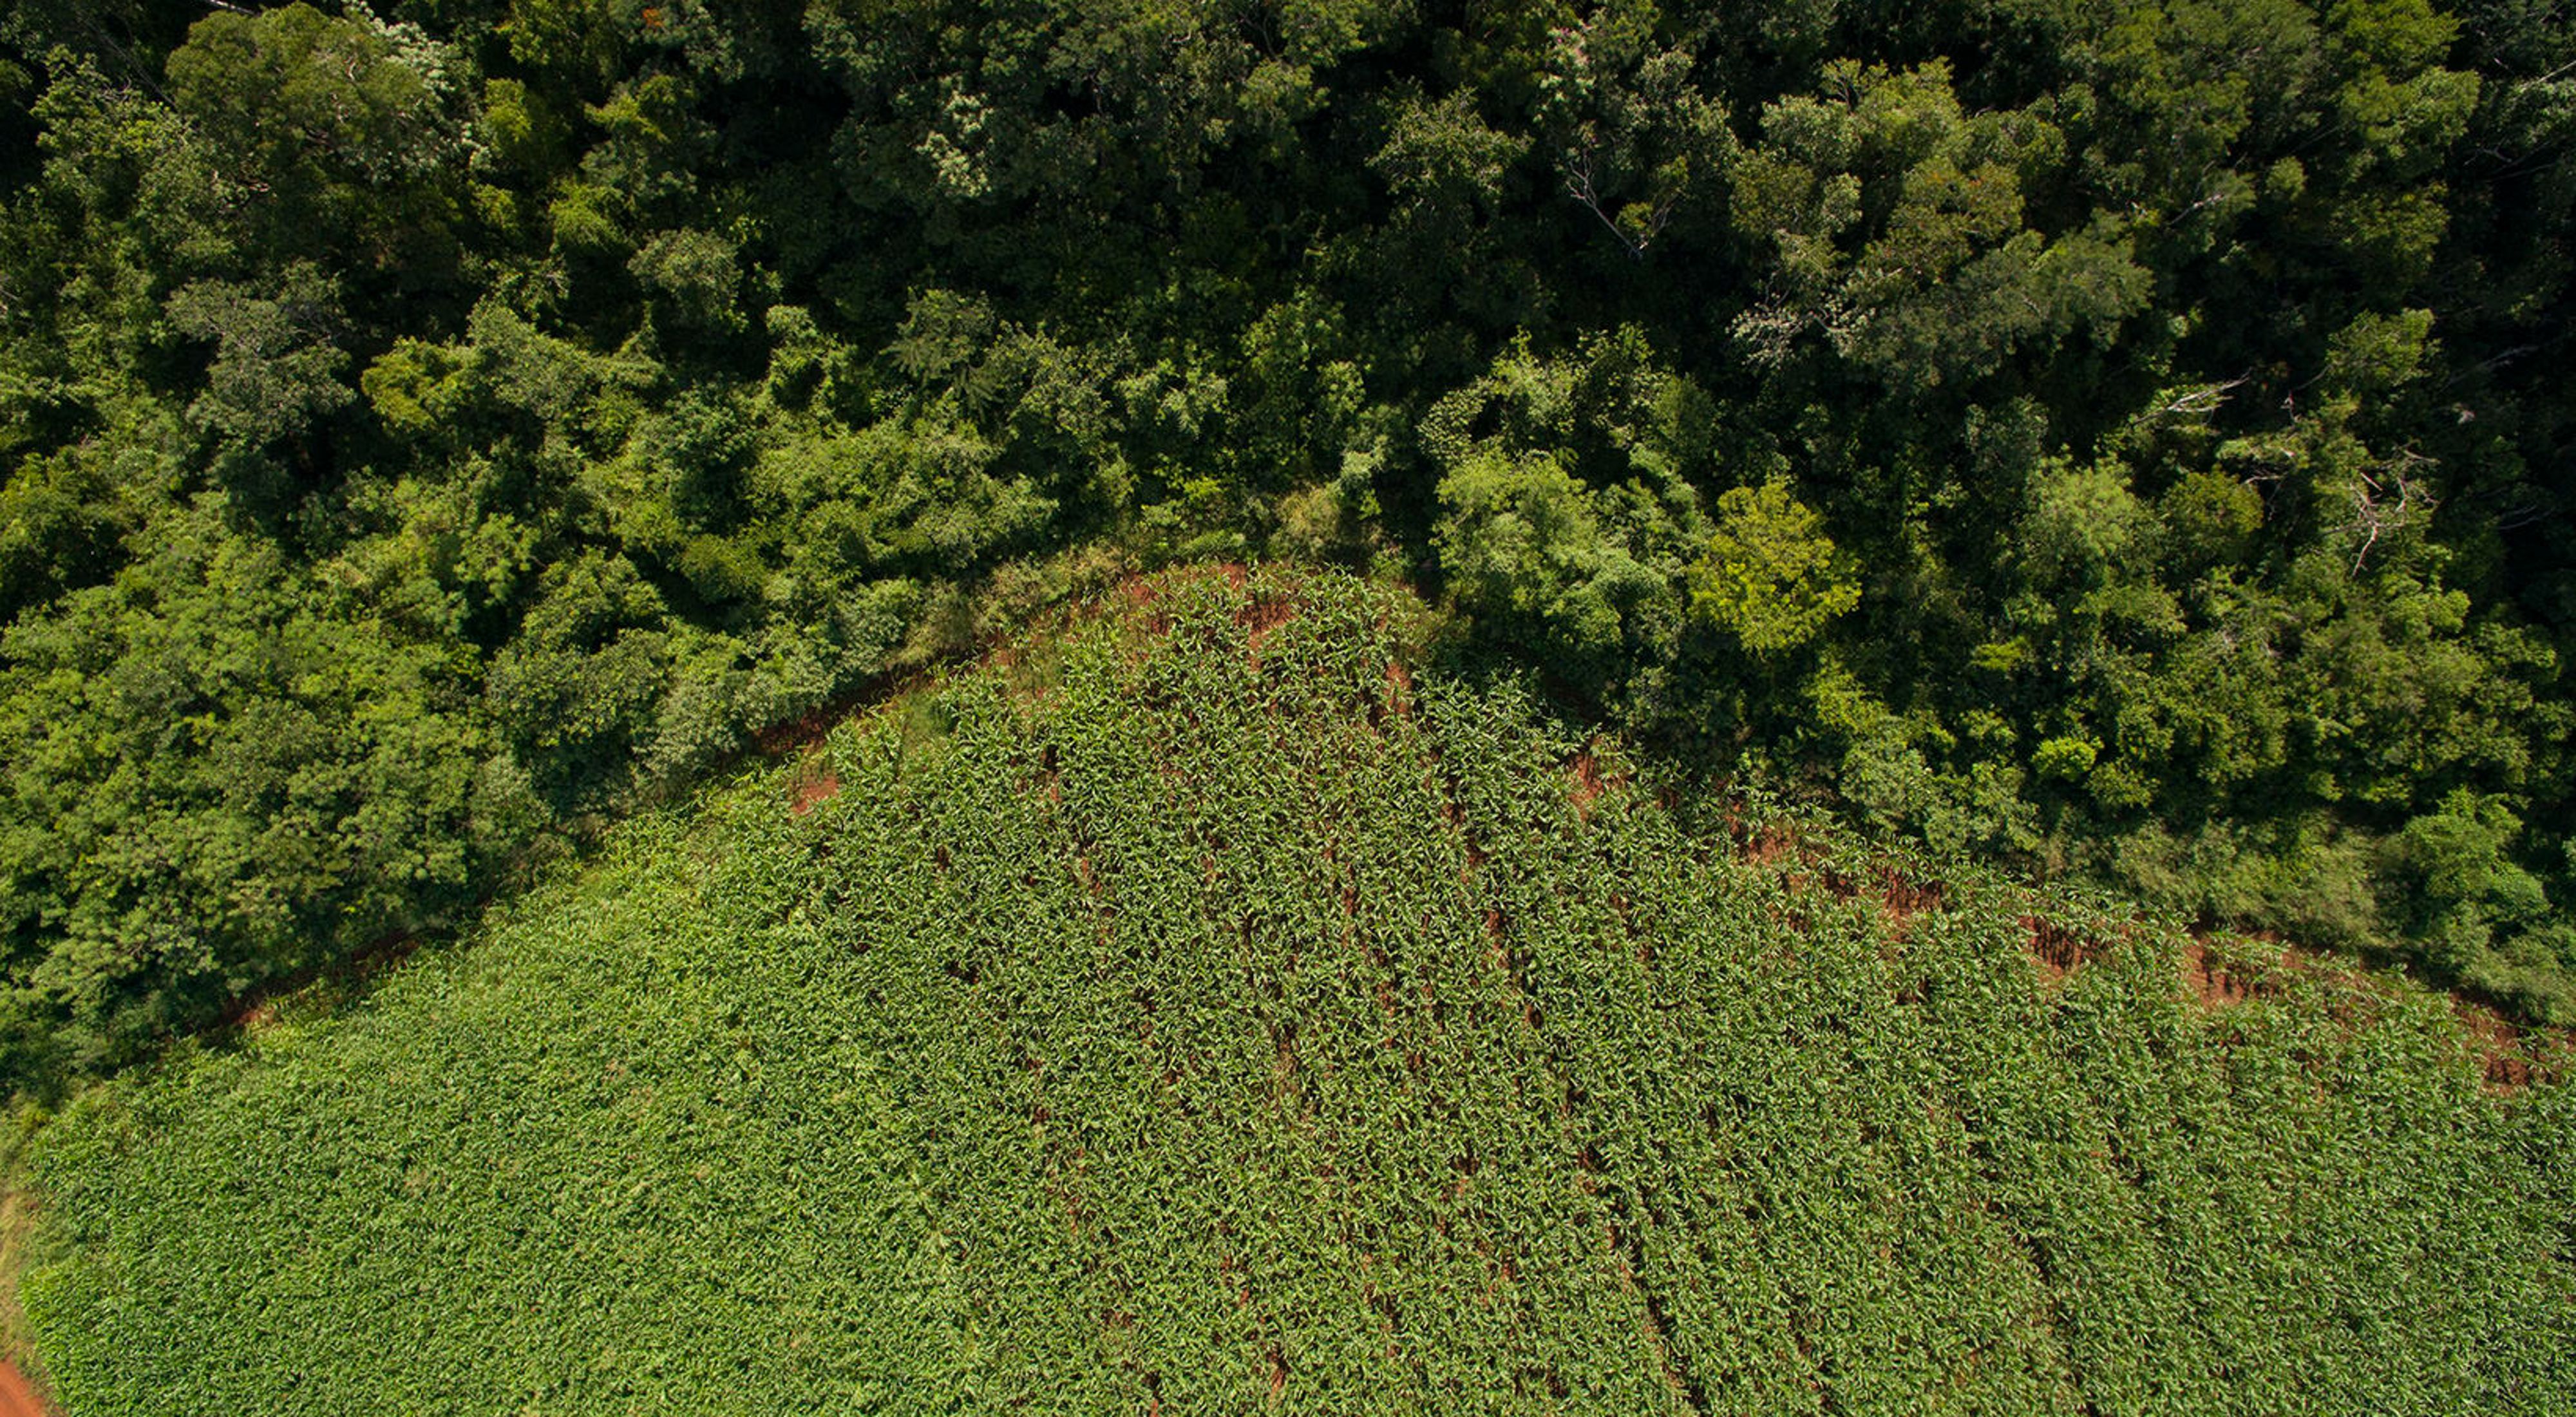 borders corn fields in the ejido of San Agustin, Yucatan.